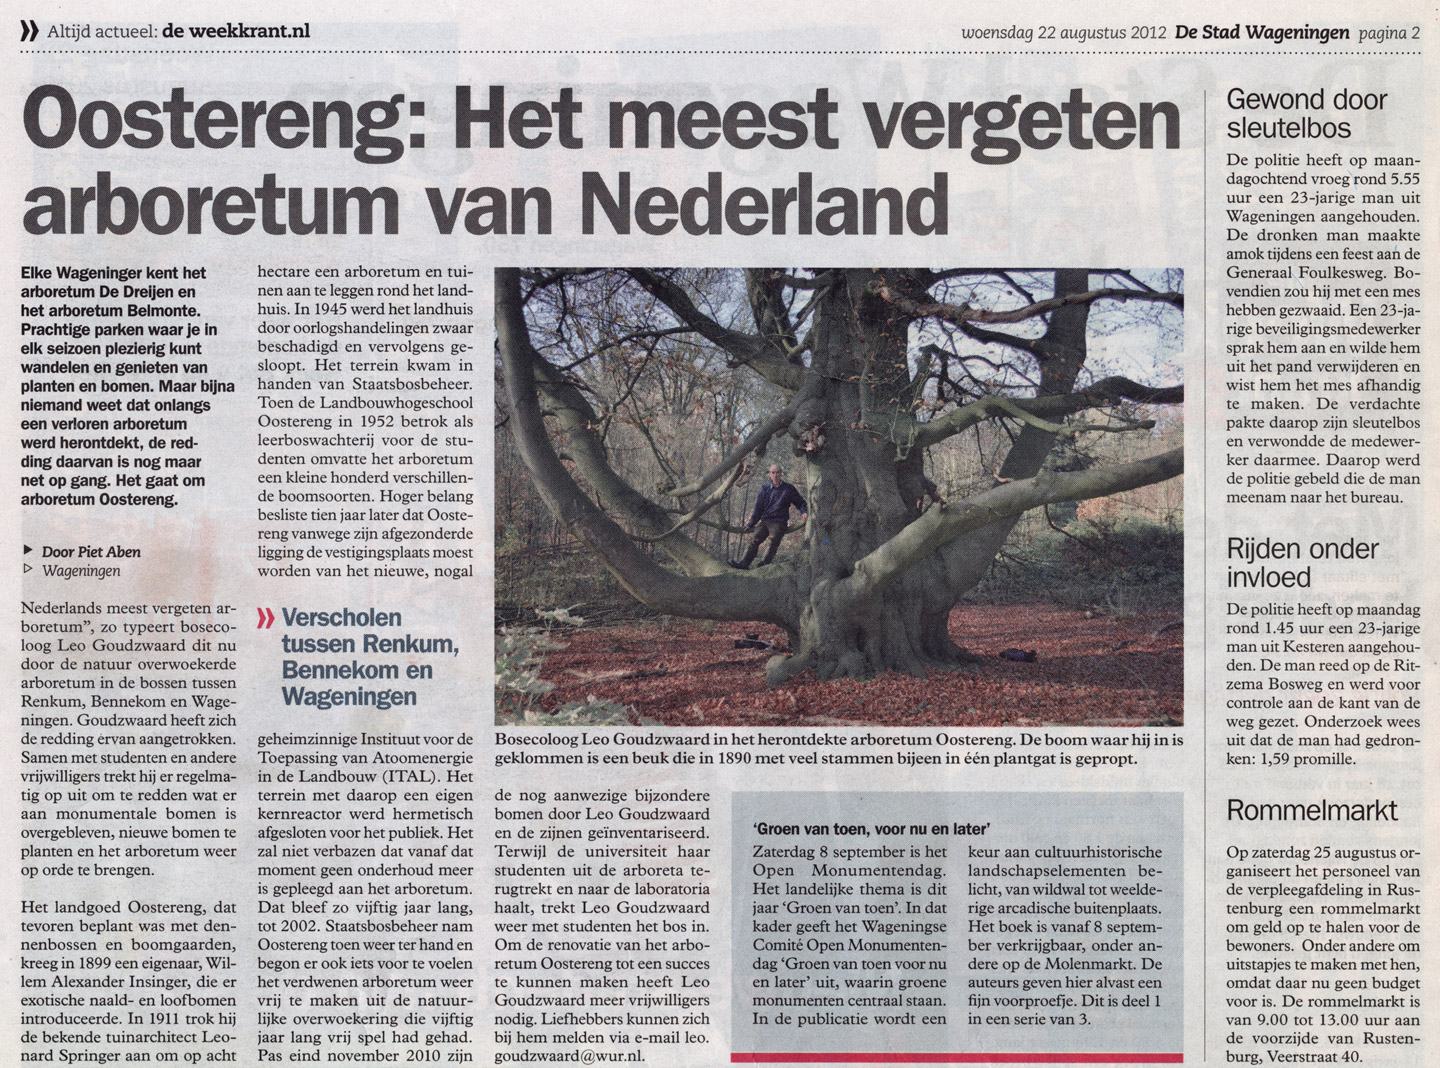 Oostereng: Het meest vergeten arboretum van Nederland